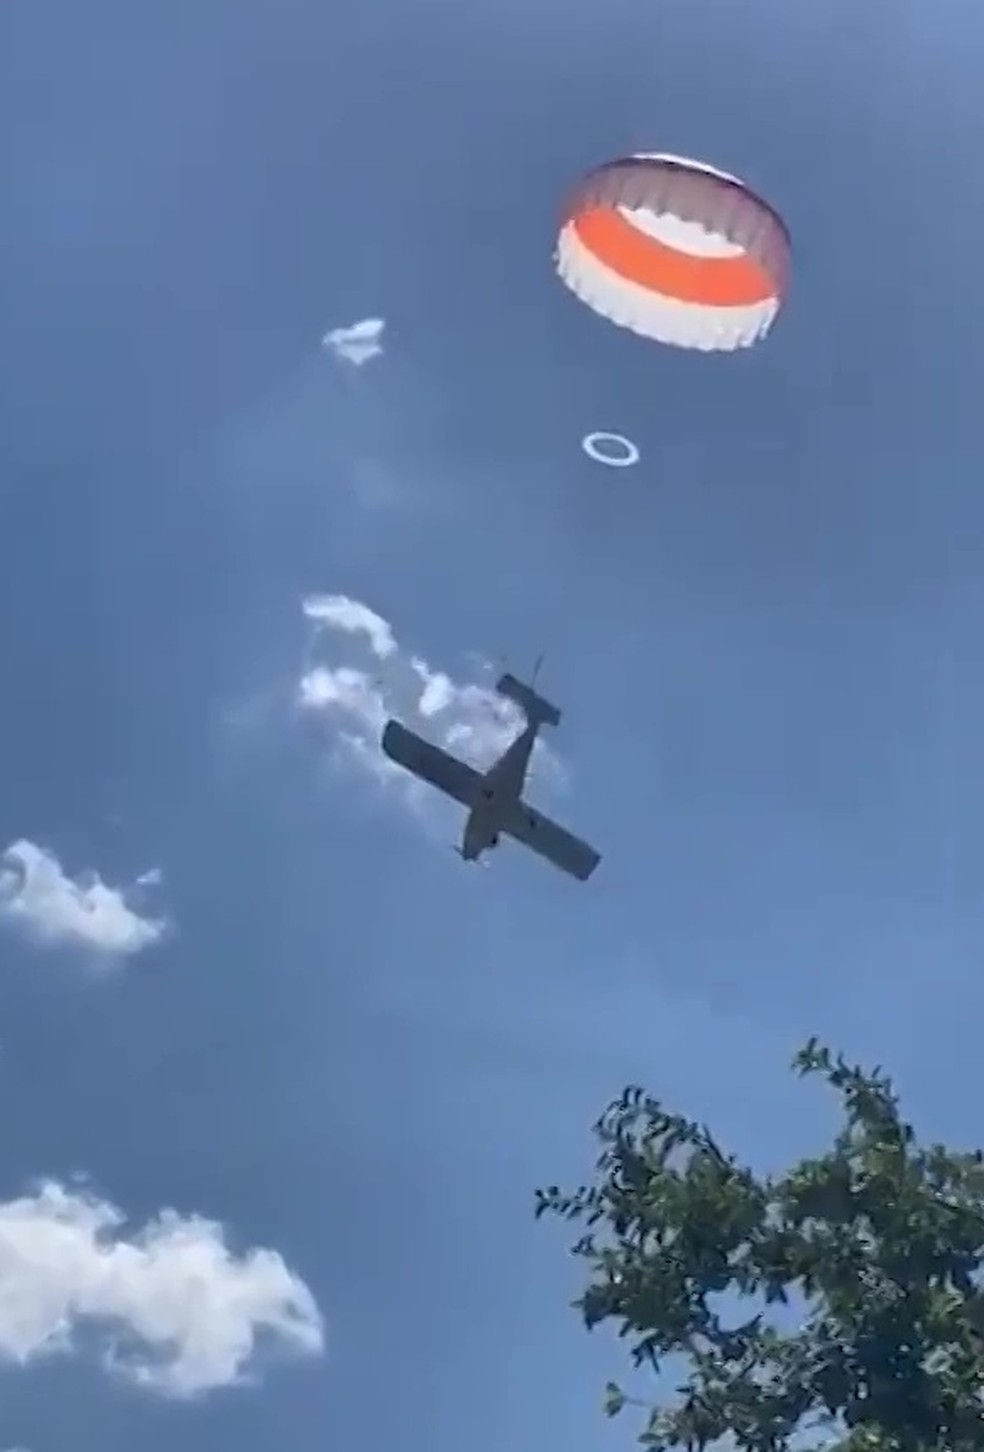 VÍDEO: Piloto aciona paraquedas de avião e faz pouso de emergência